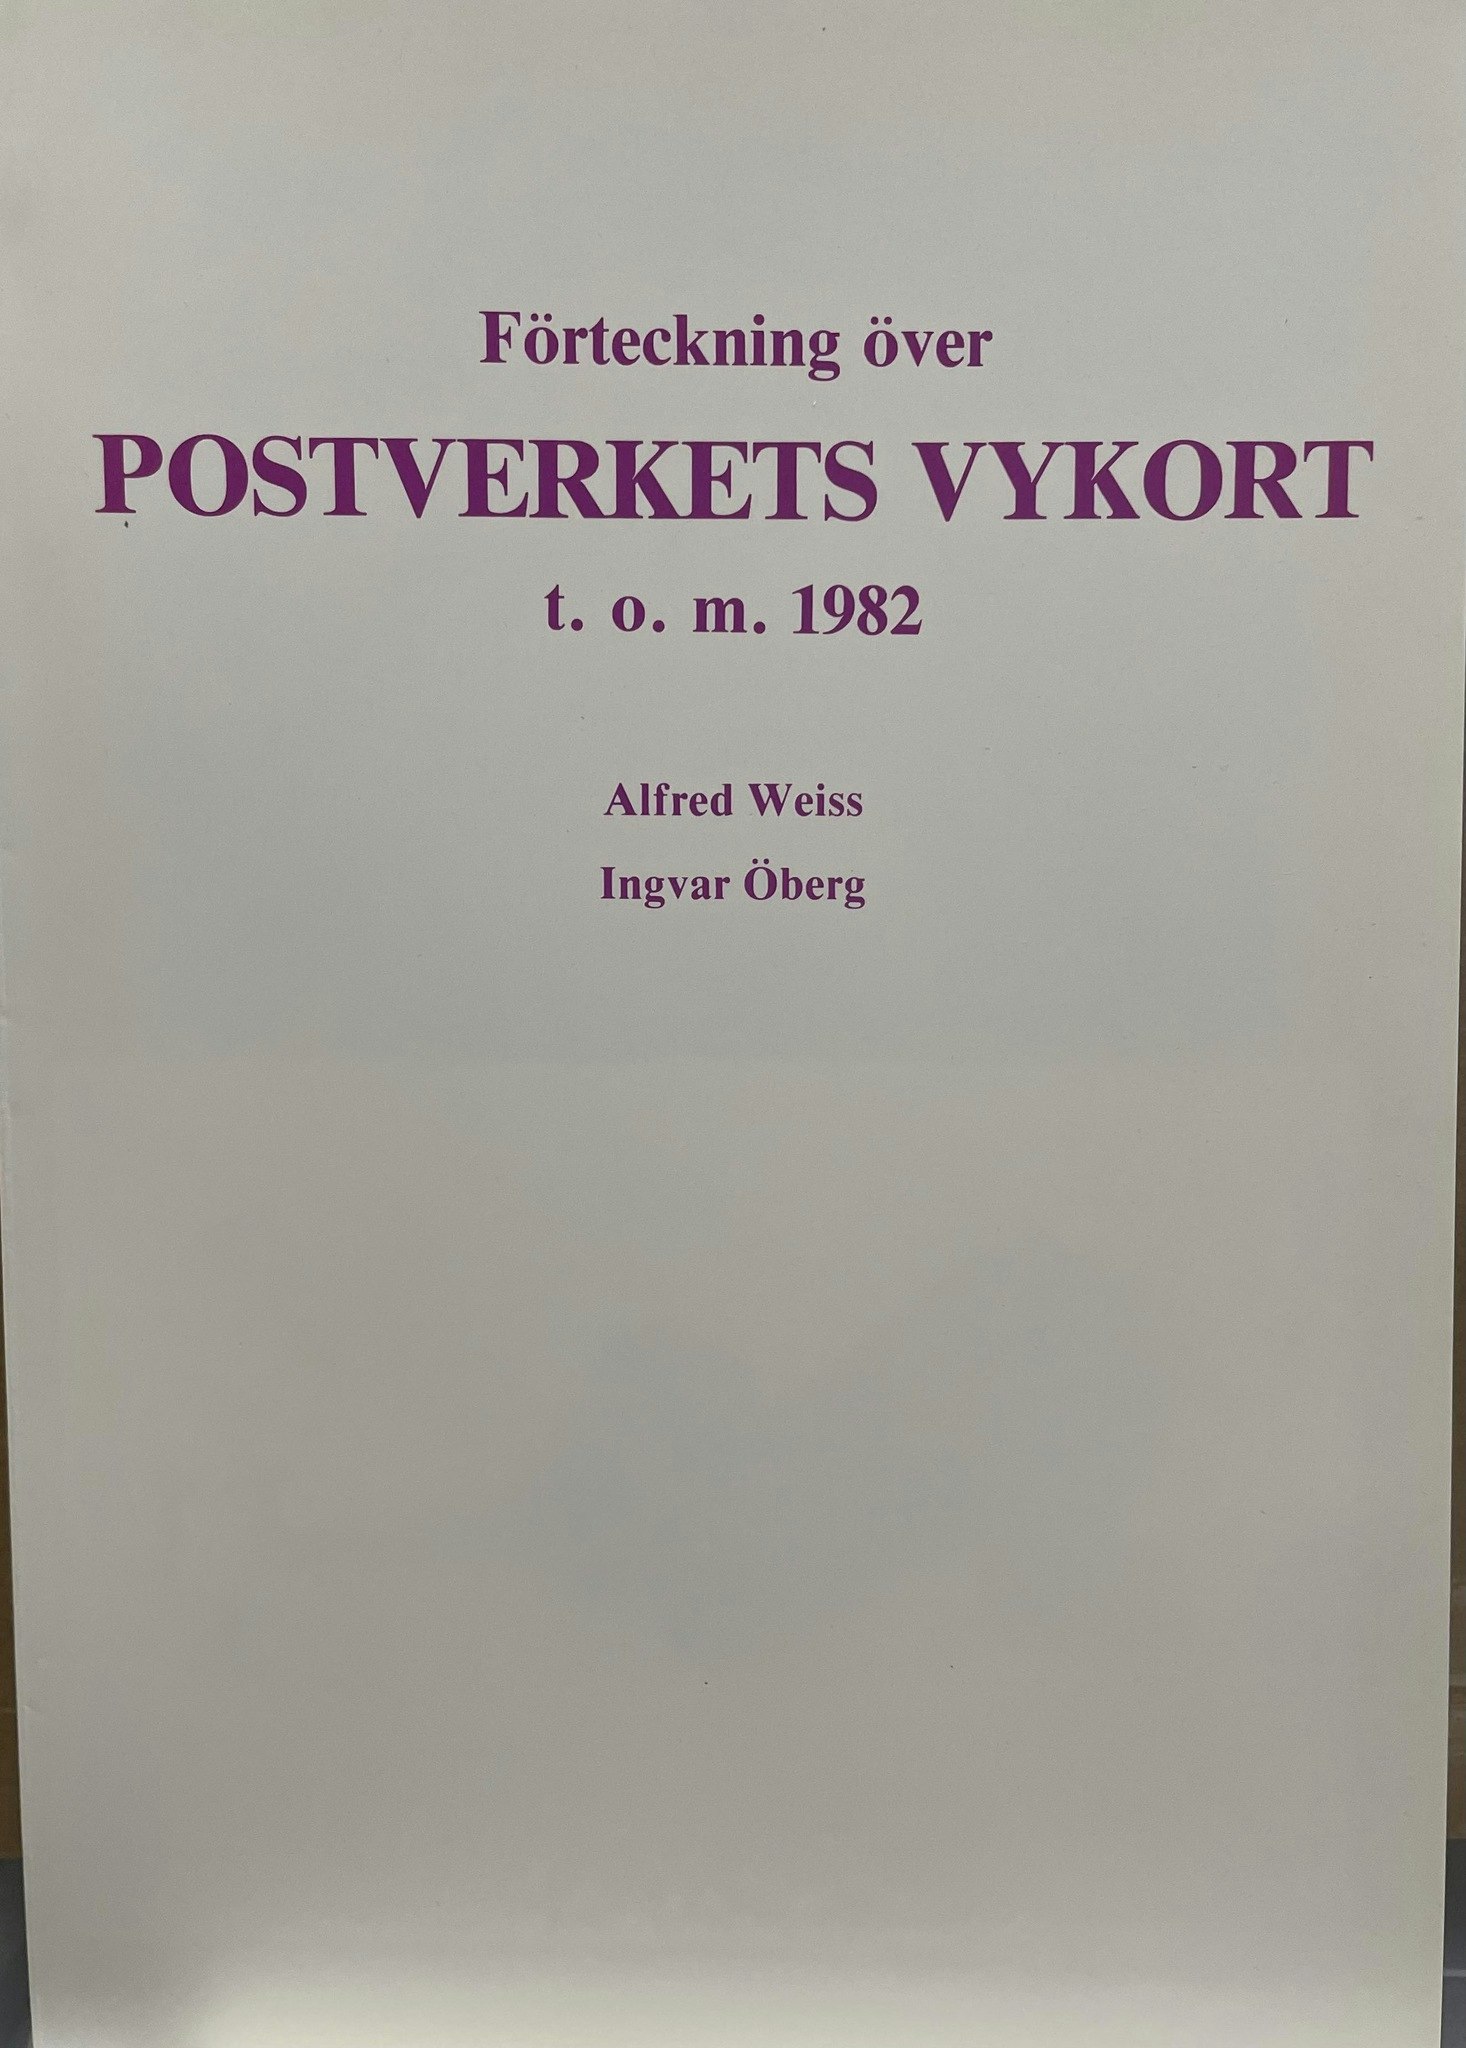 Förteckning över Postverkets vykort till och med 1982